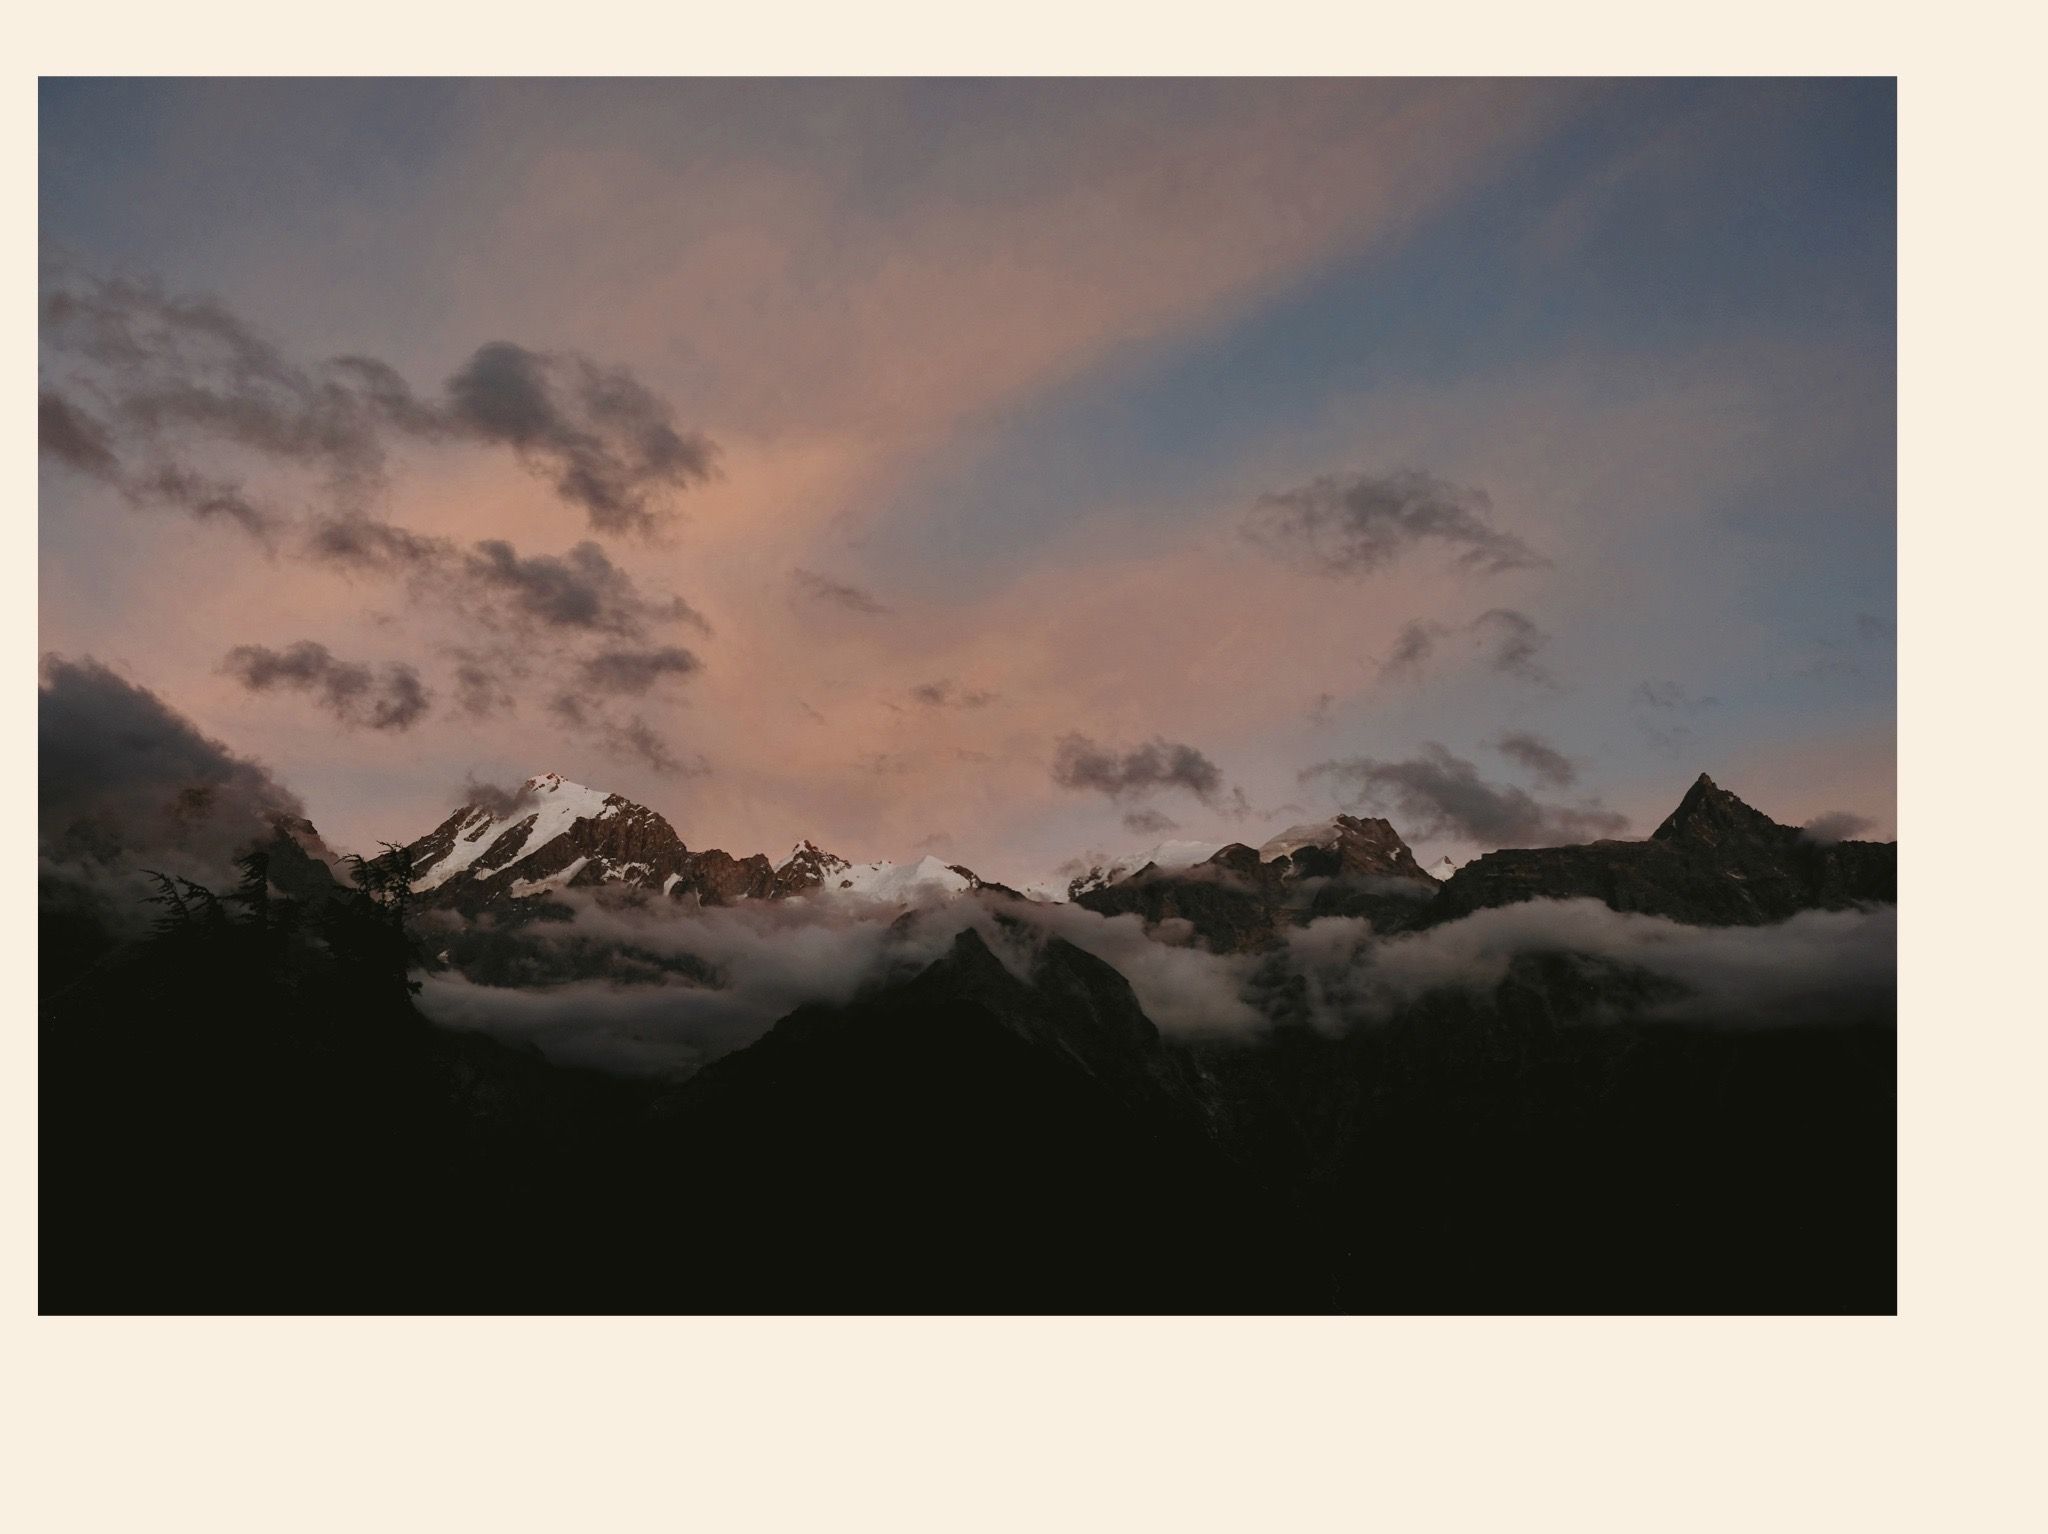 The Kinnaur Kailash range at twilight. From Kalpa, Kinnaur, Himachal Pradesh, India. August 2022.